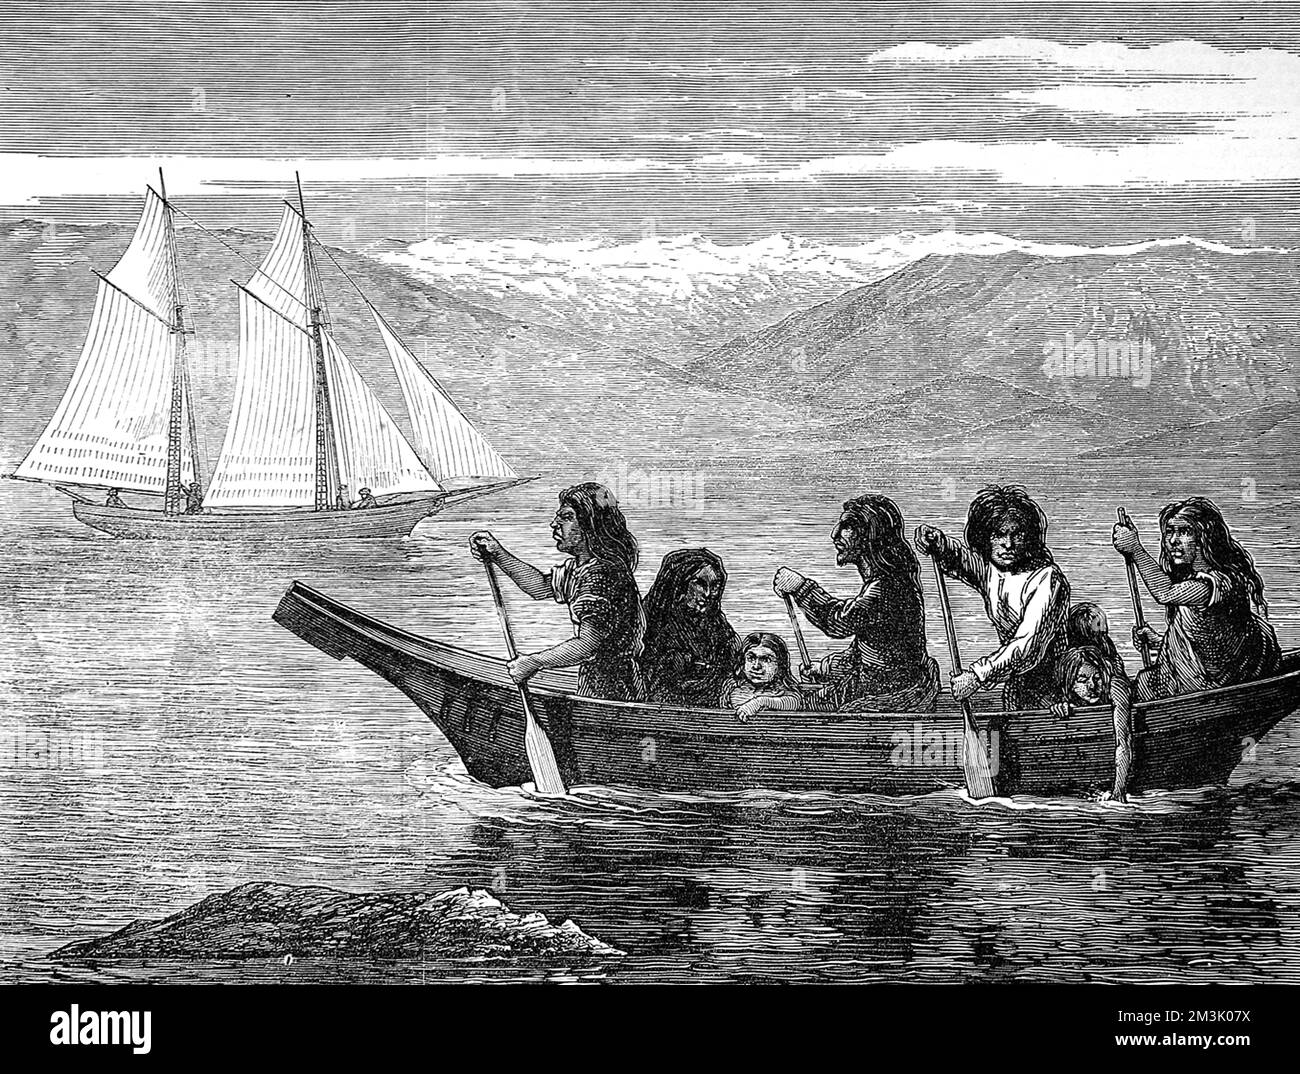 Indiani agguerriti, uomini, donne e bambini, canoa da pagaiare con una goletta sullo sfondo. Data: 1872 Foto Stock